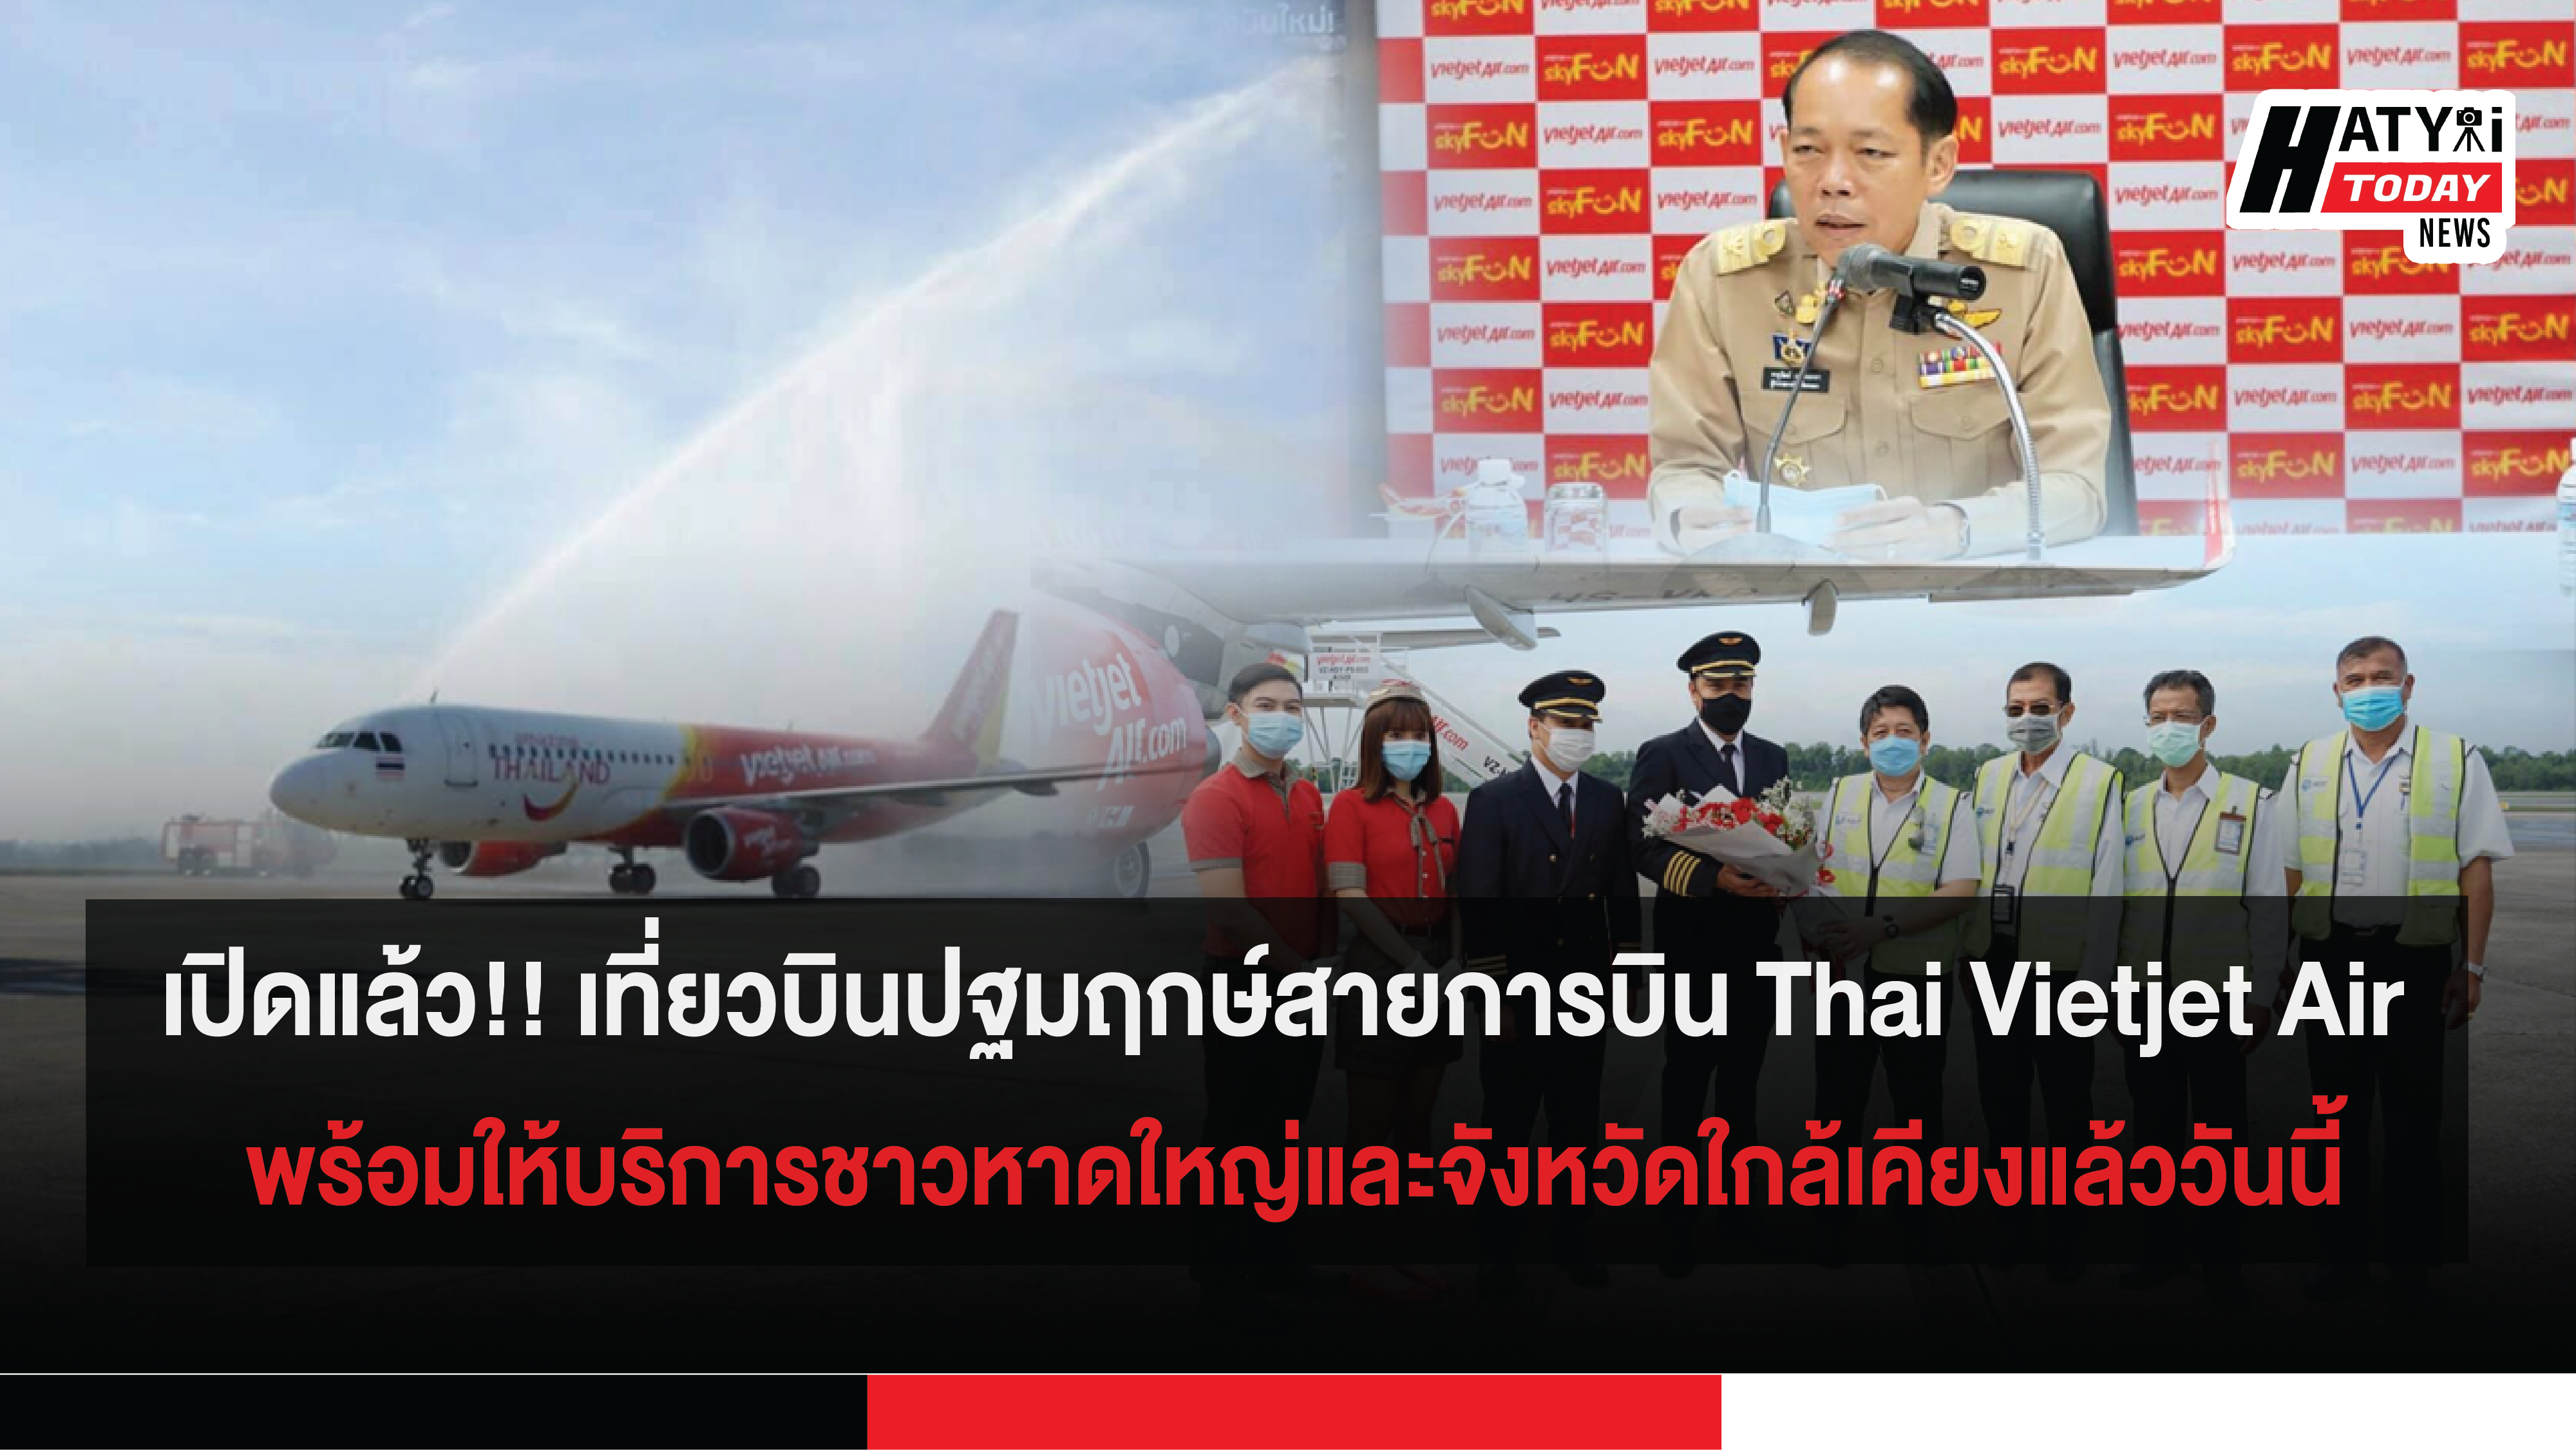 เปิดแล้ว!! เที่ยวบินปฐมฤกษ์สายการบิน Thai Vietjet Air พร้อมให้บริการชาวหาดใหญ่และจังหวัดใกล้เคียงแล้ววันนี้